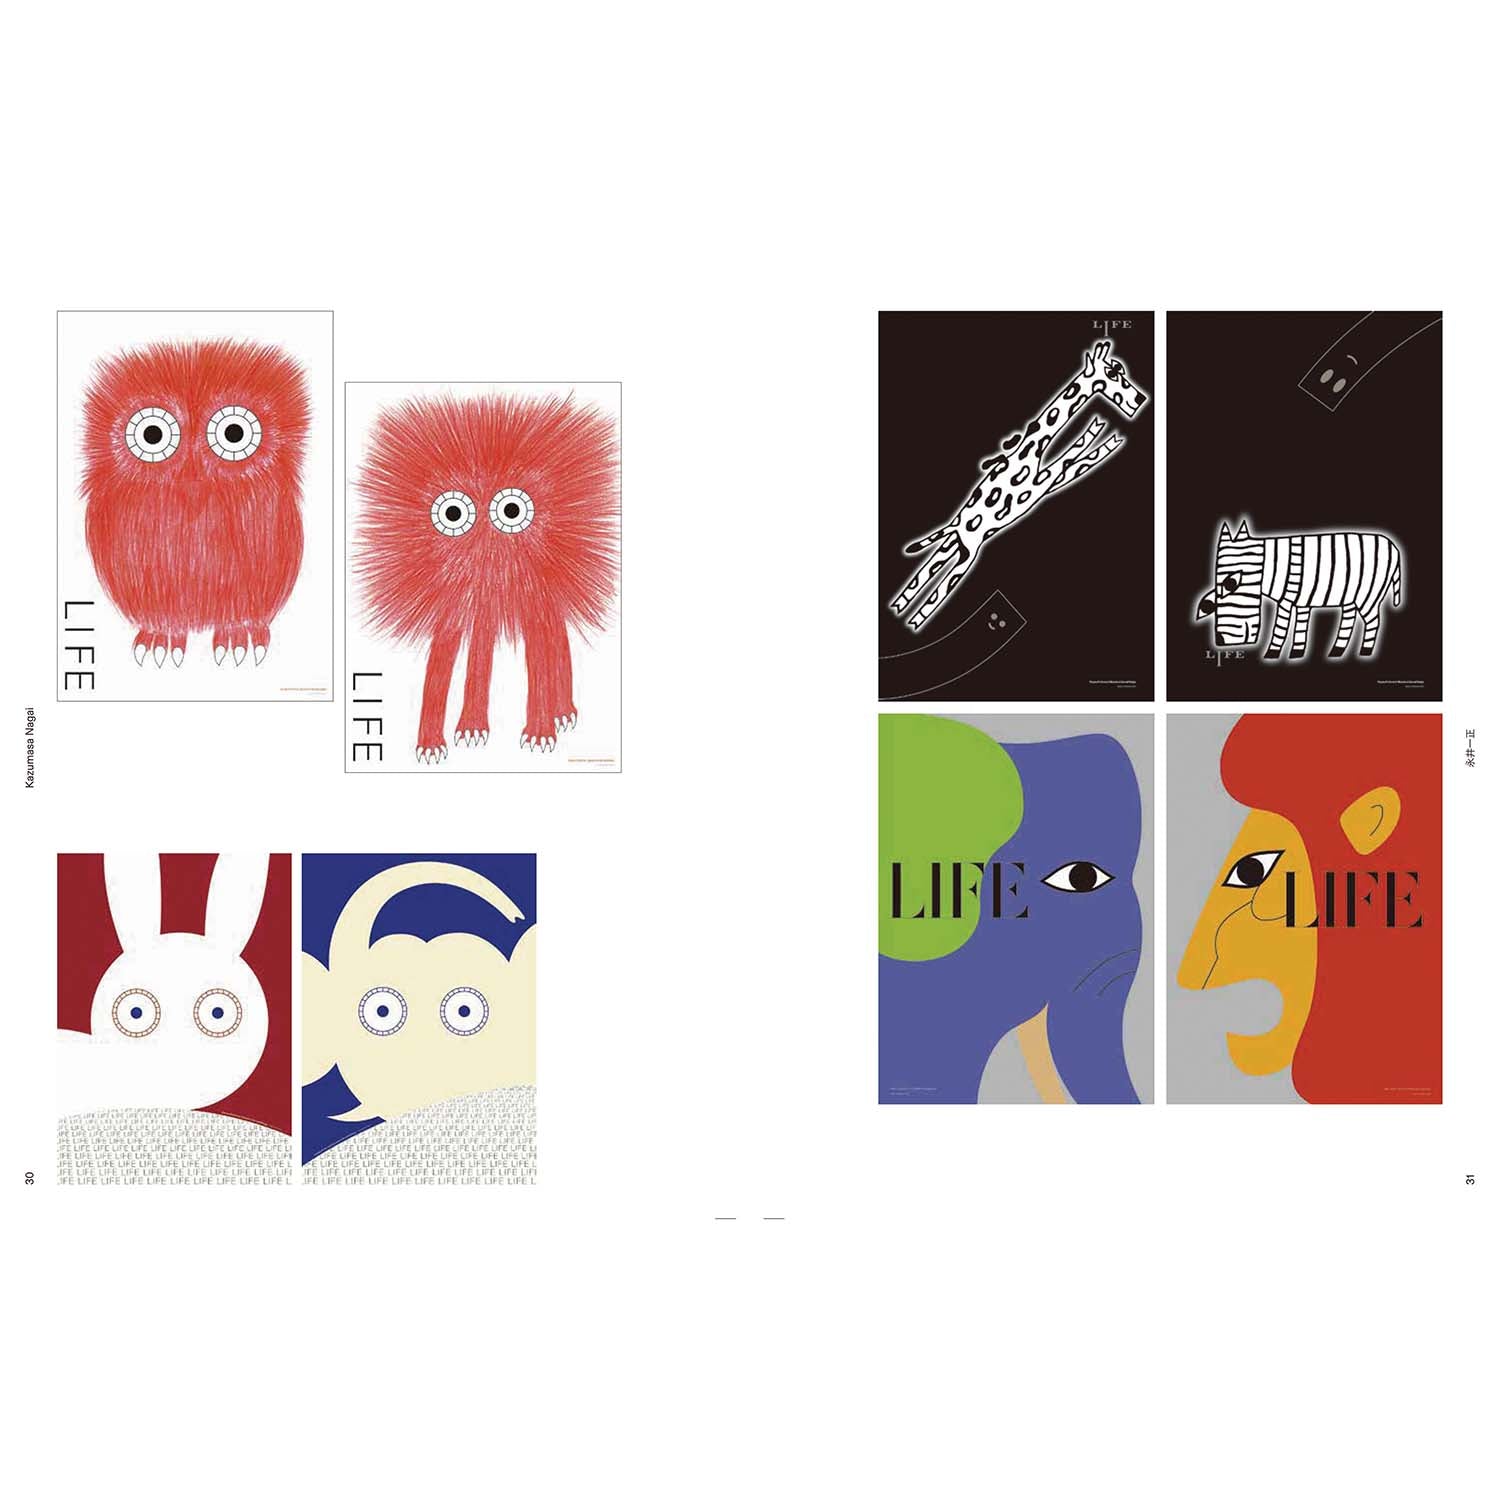 Graphic design giapponese - Evoluzione dello stile ed espressioni contemporanee